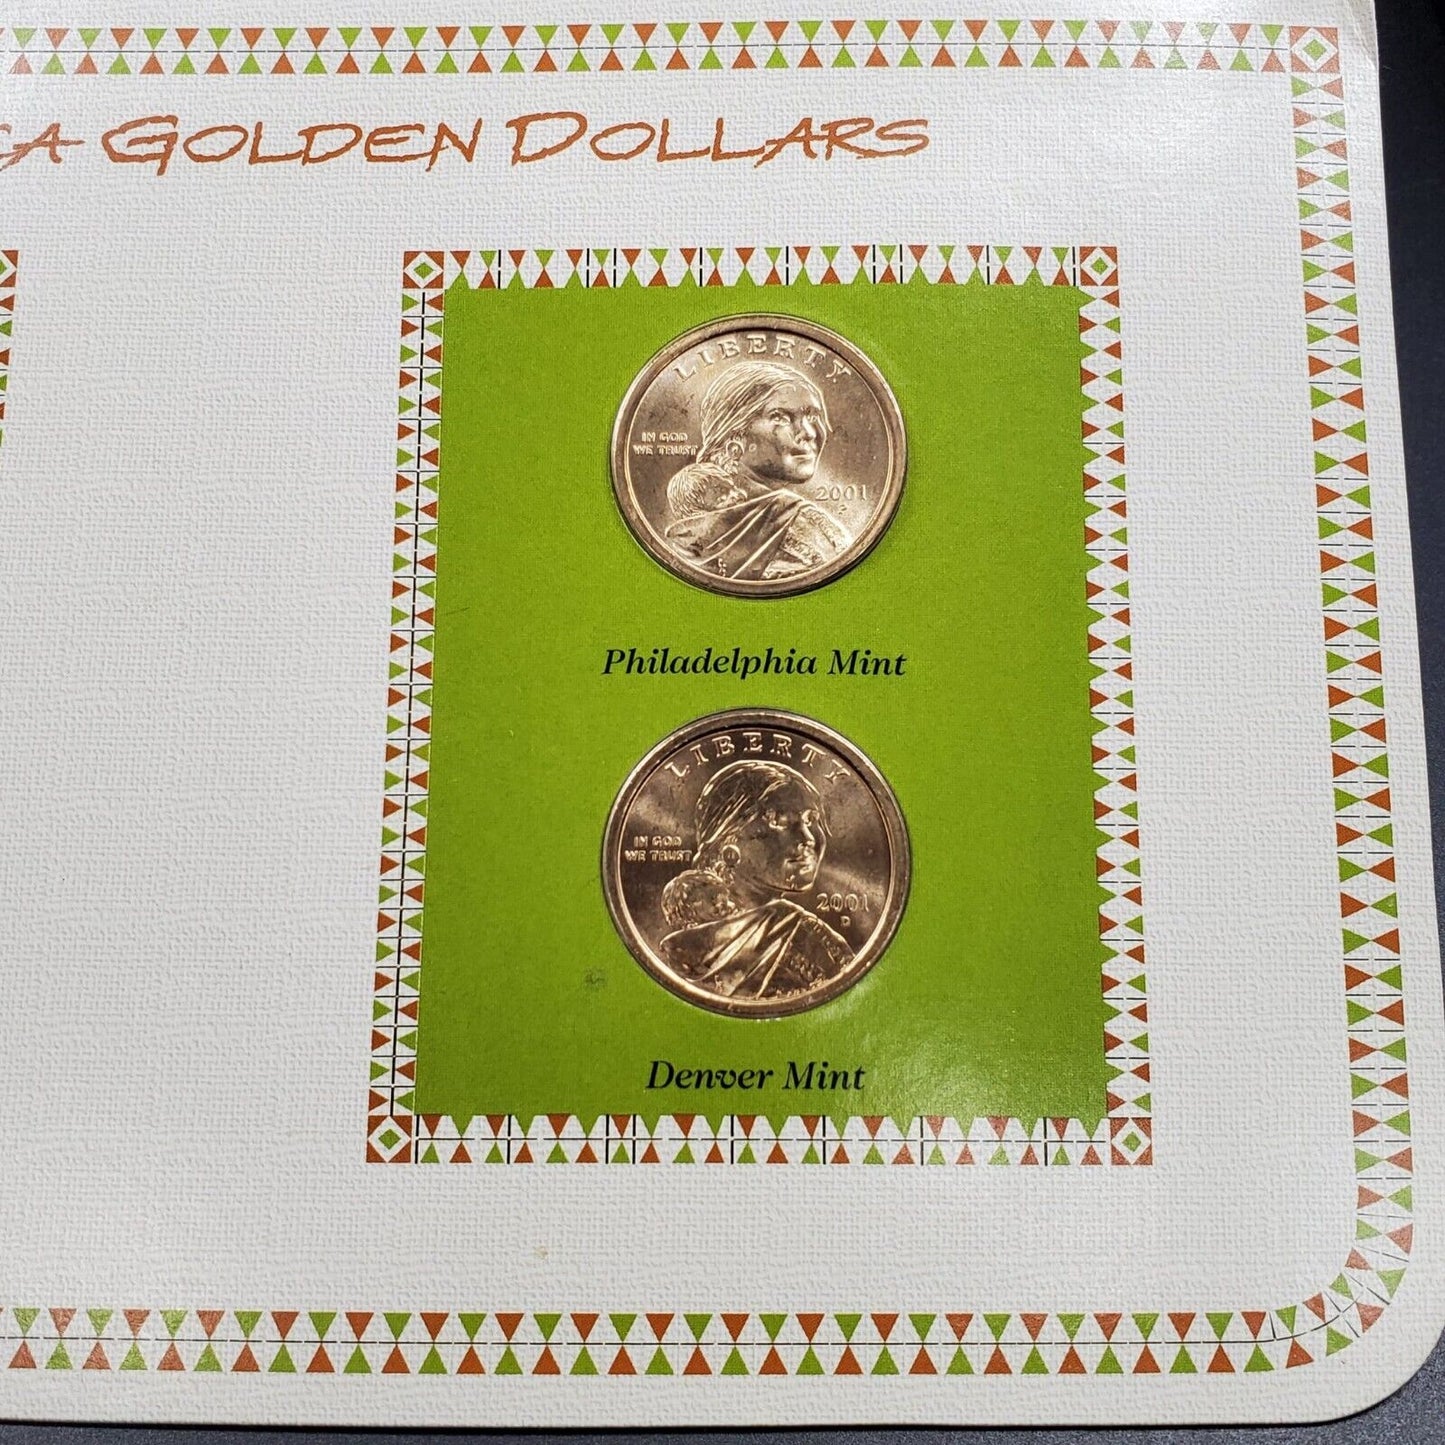 2001 P & D Sacagawea Golden Dollars & 1954 USA 3C Stamp Uncirculated Sheet